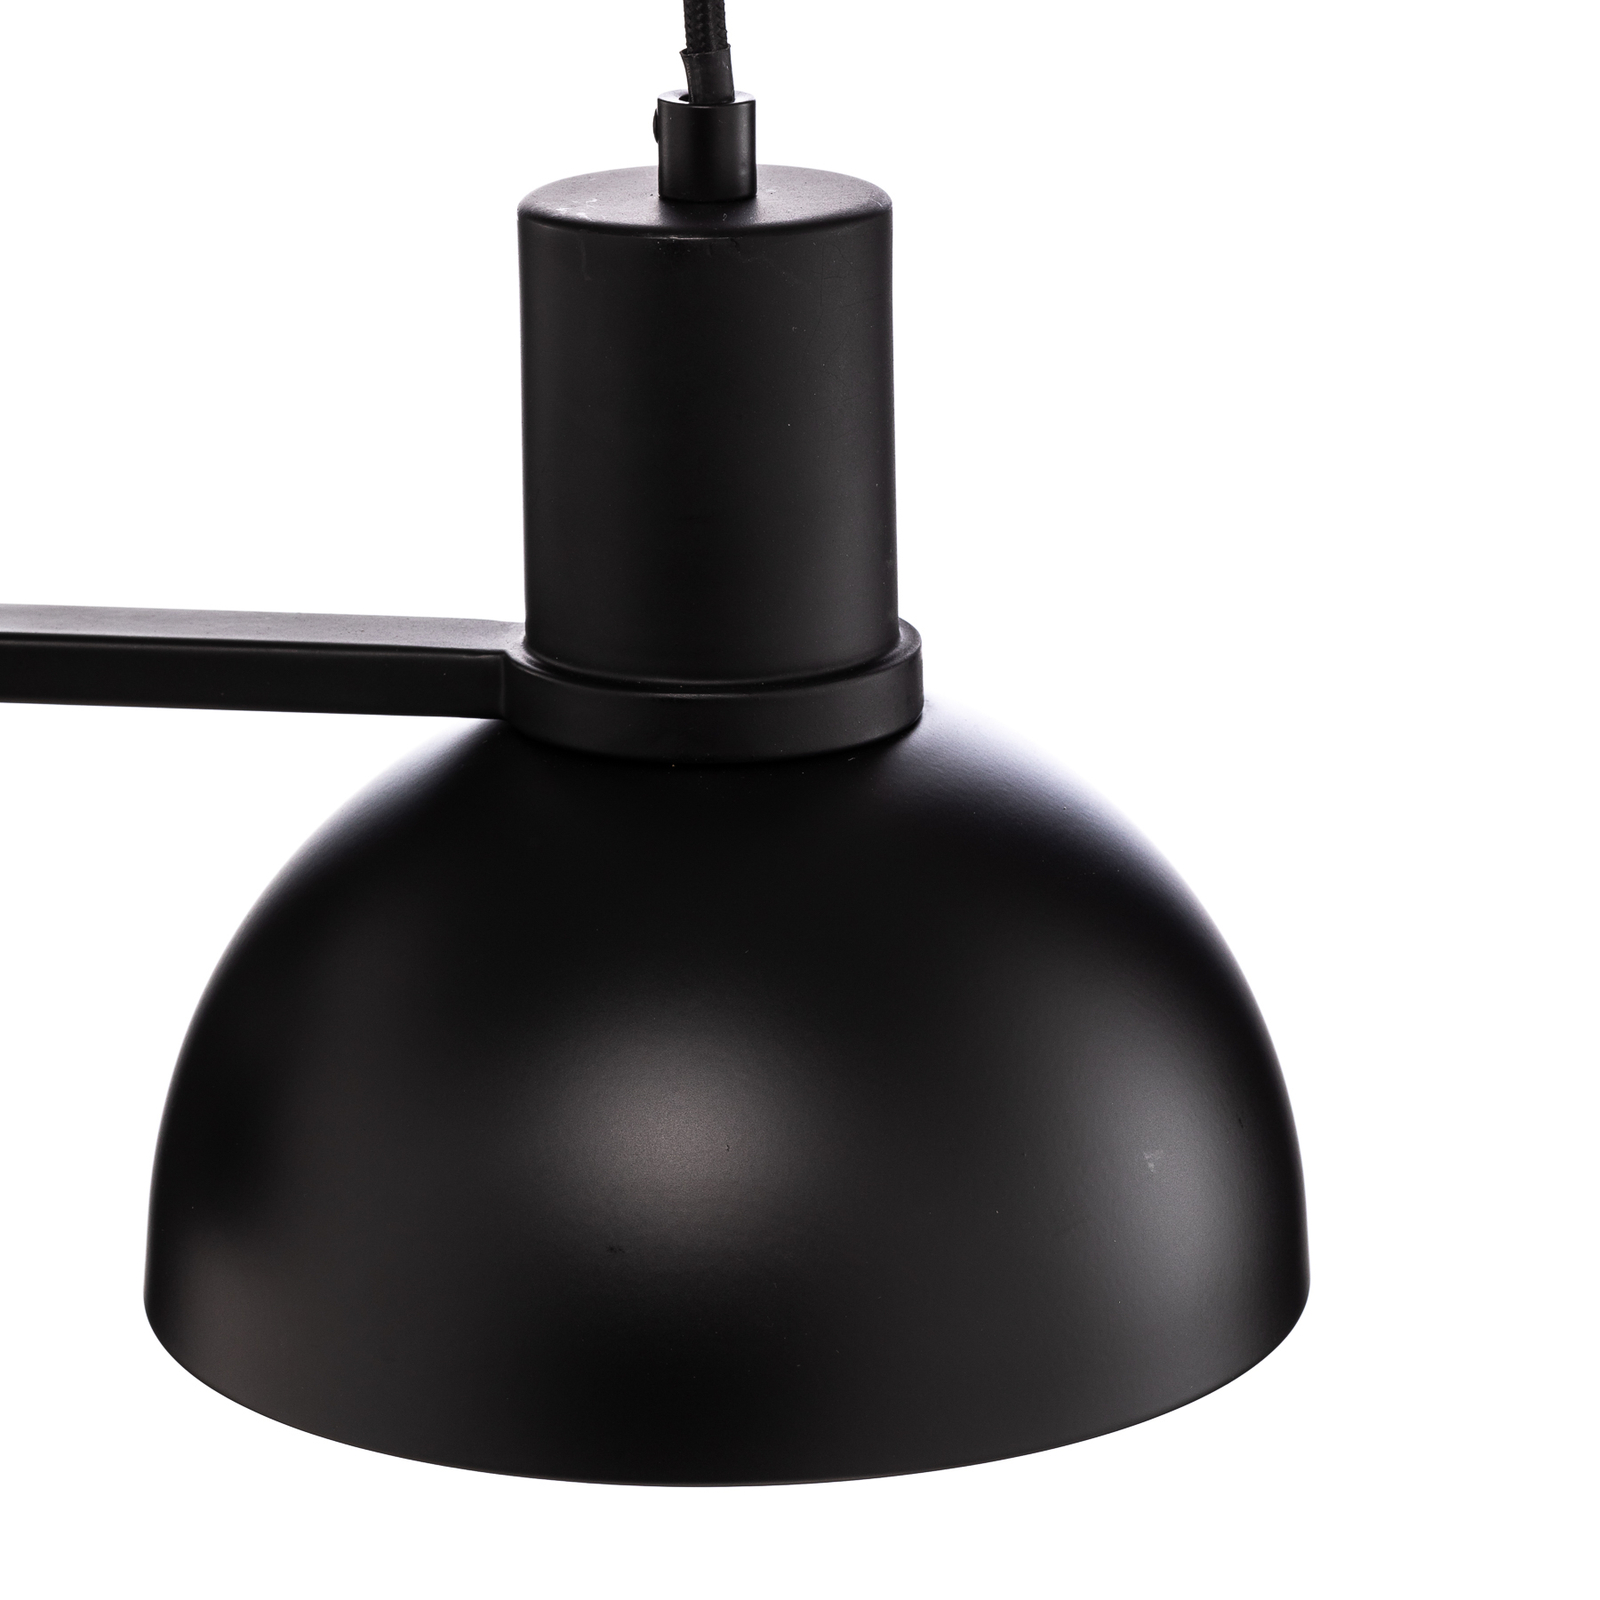 Lucande Mostrid závesná lampa, čierna, 2-plameňová